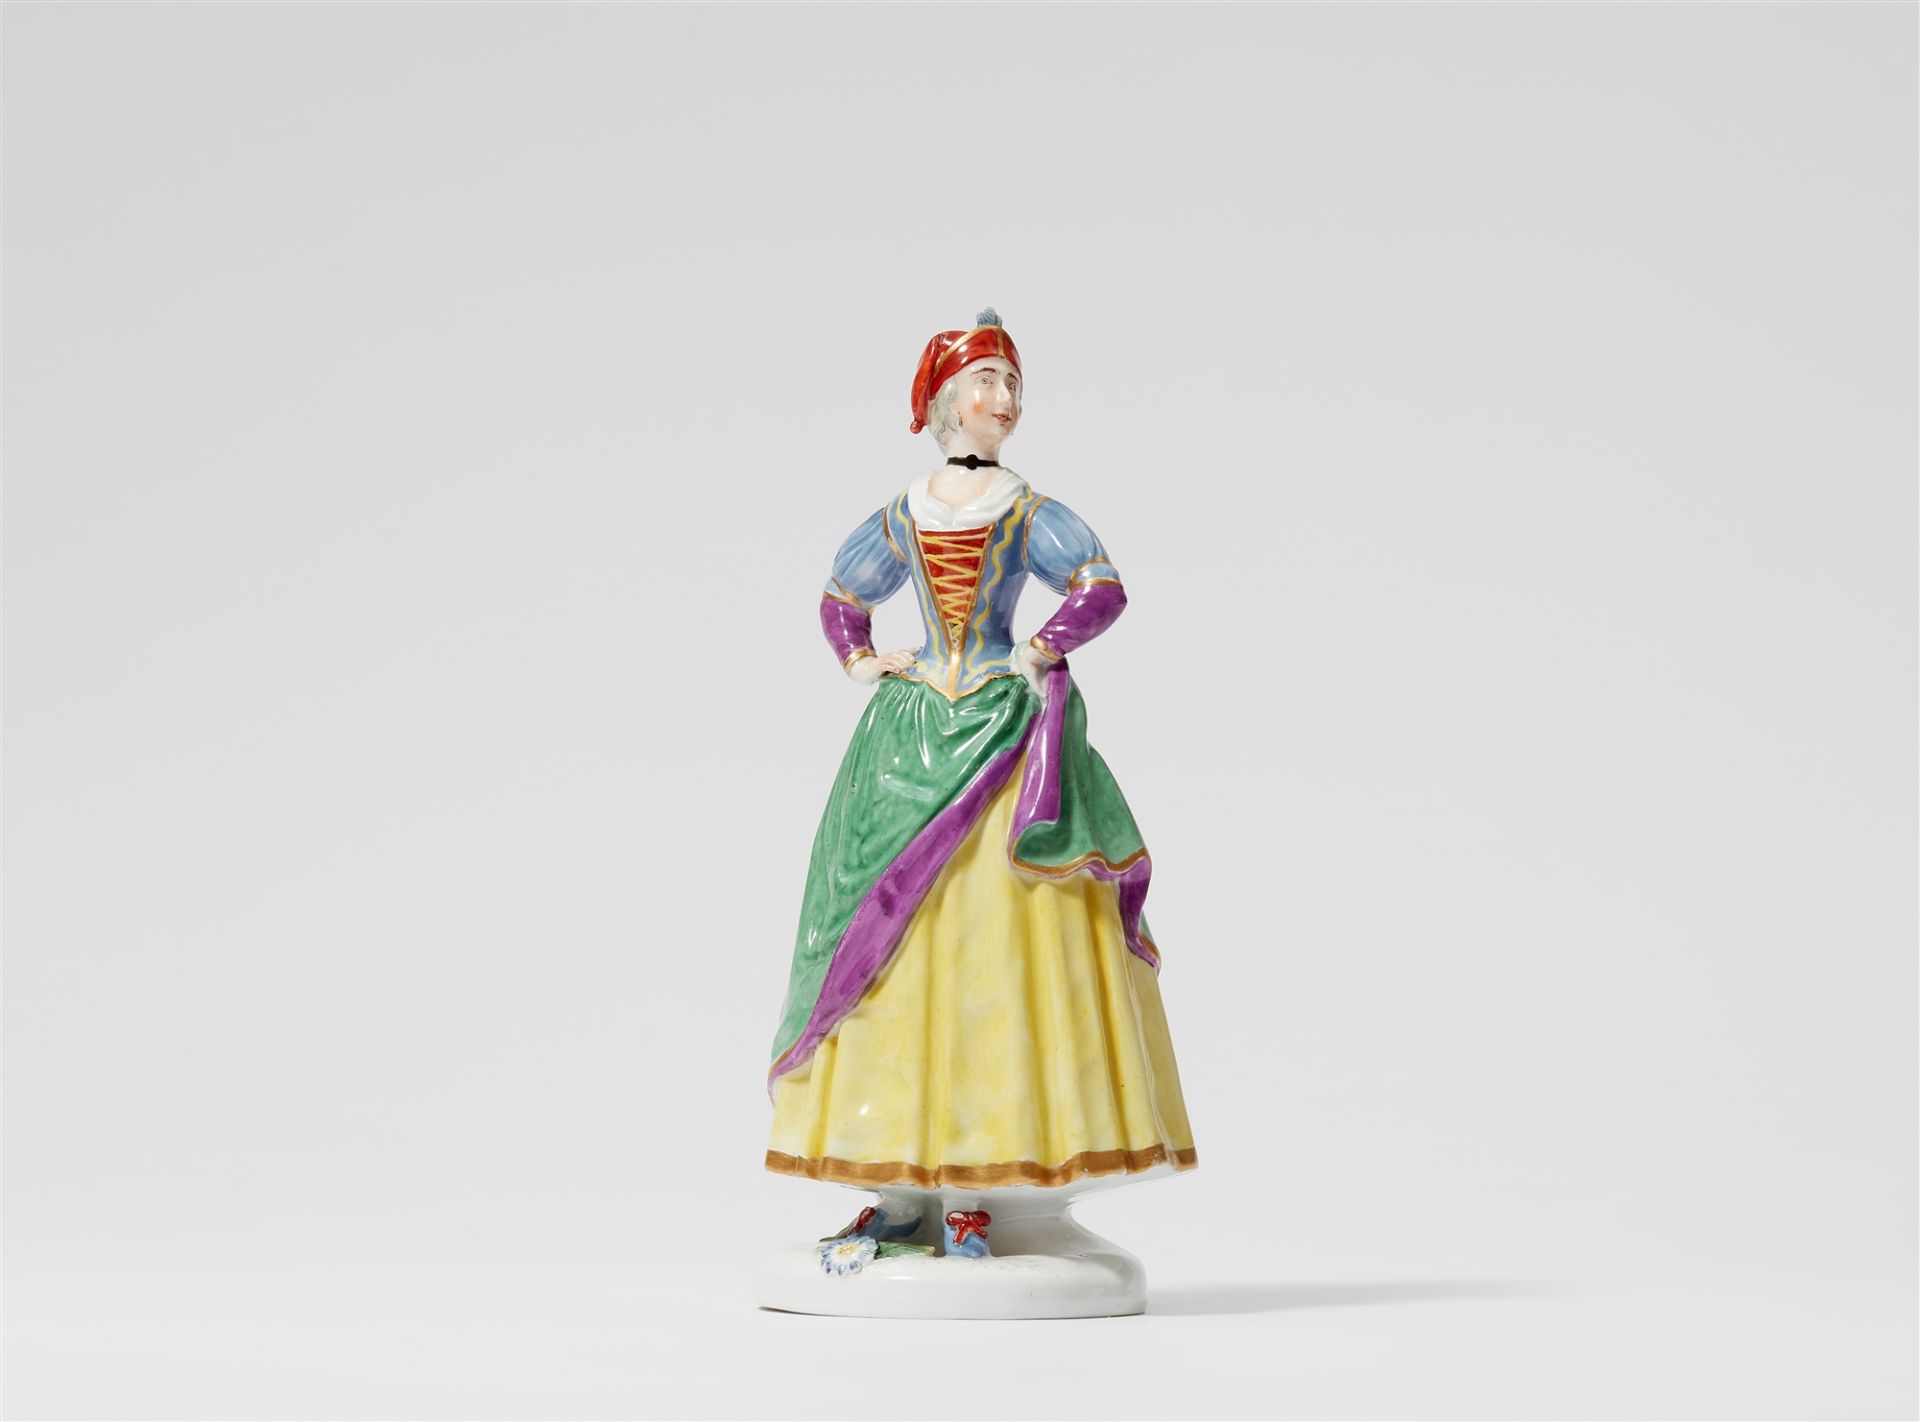 A rare Fürstenberg porcelain figure of Ragonda from the Commedia Dell'arte